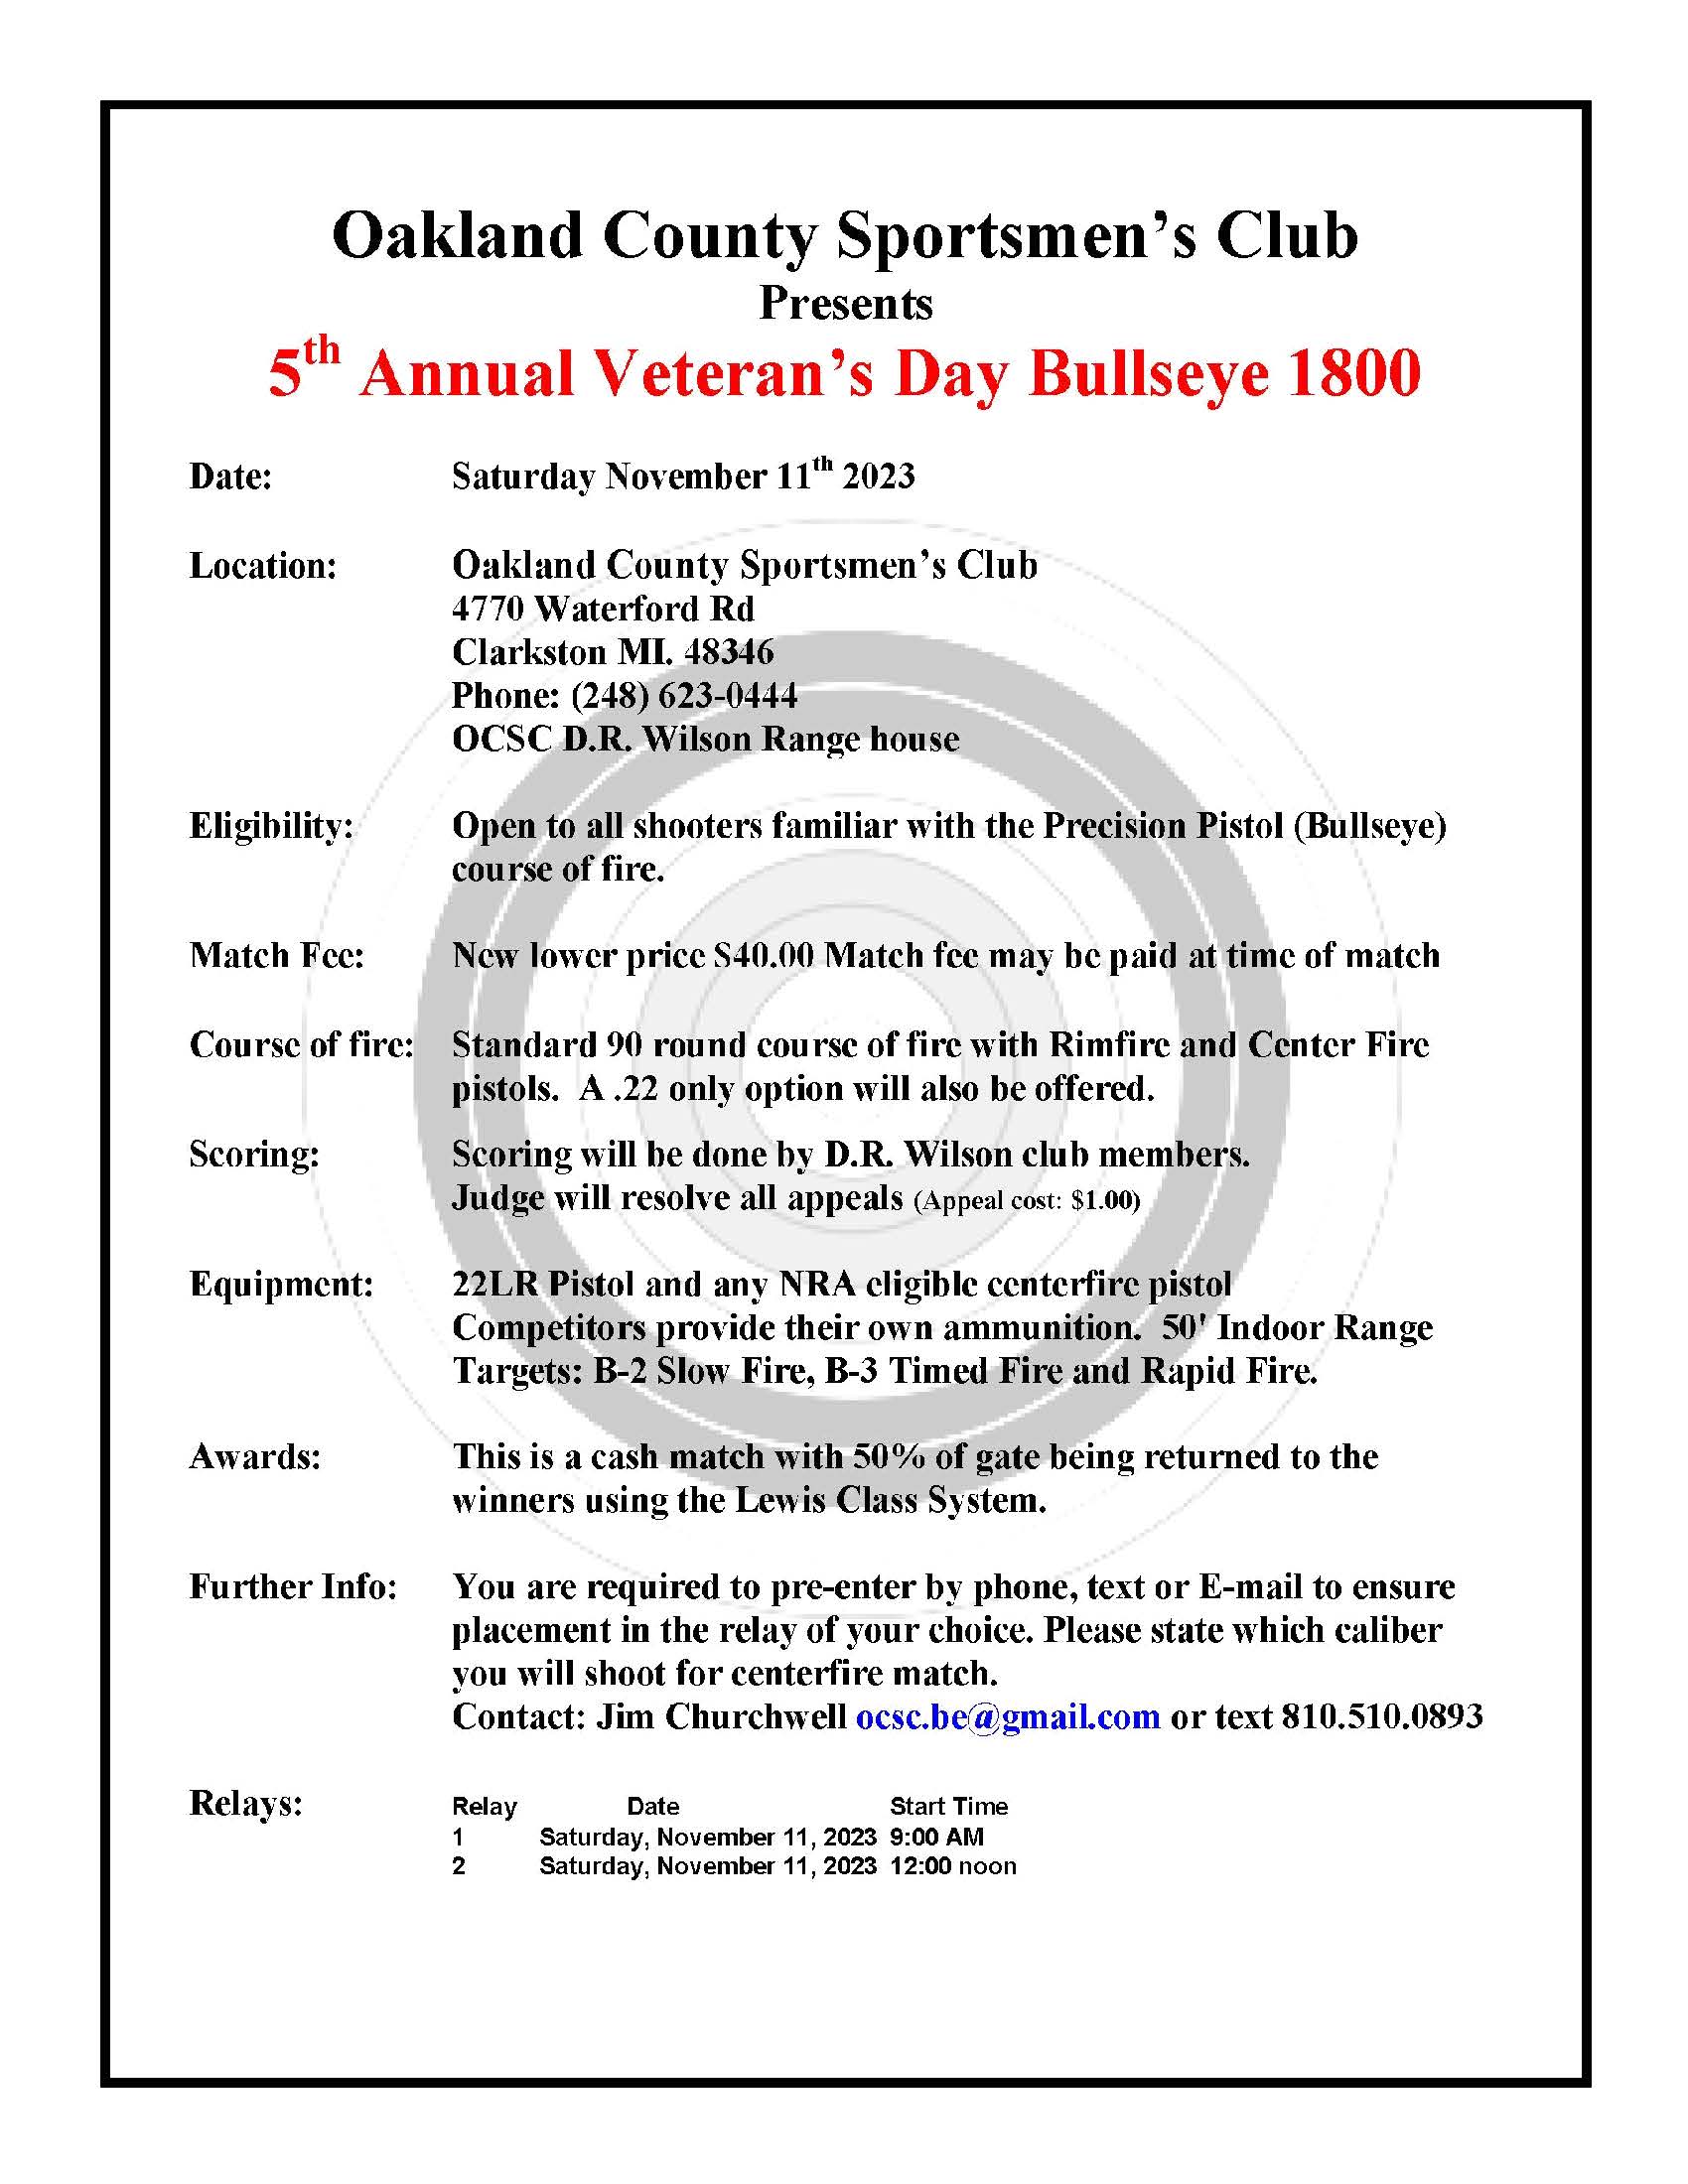 Veterans Day Bullseye 1800 flyer 2023